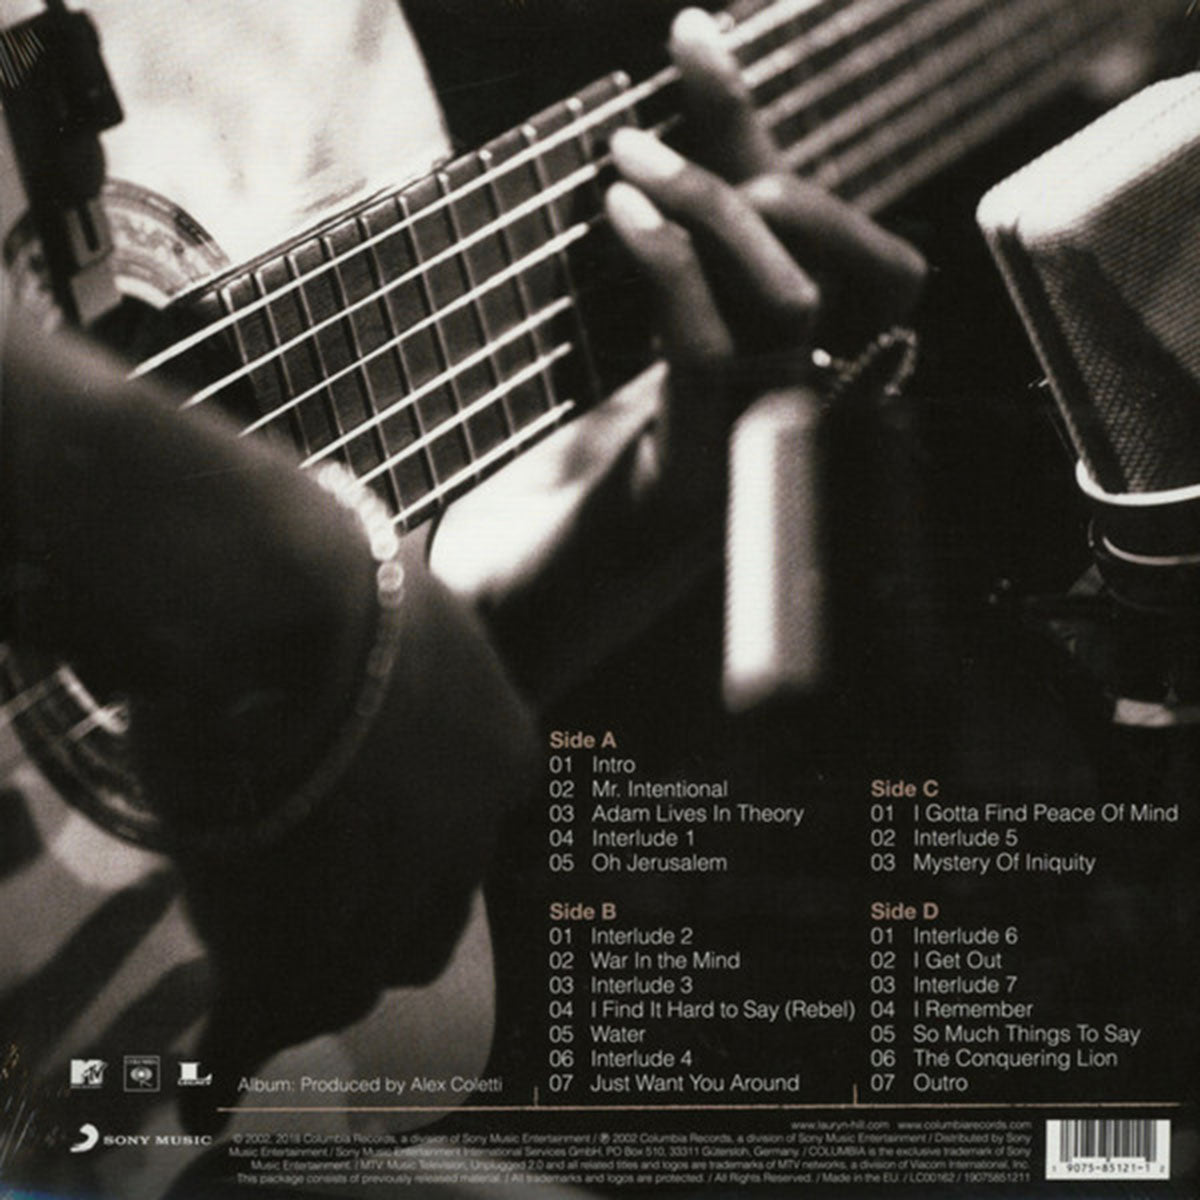 Lauryn Hill – MTV Unplugged No. 2.0 - European Pressing